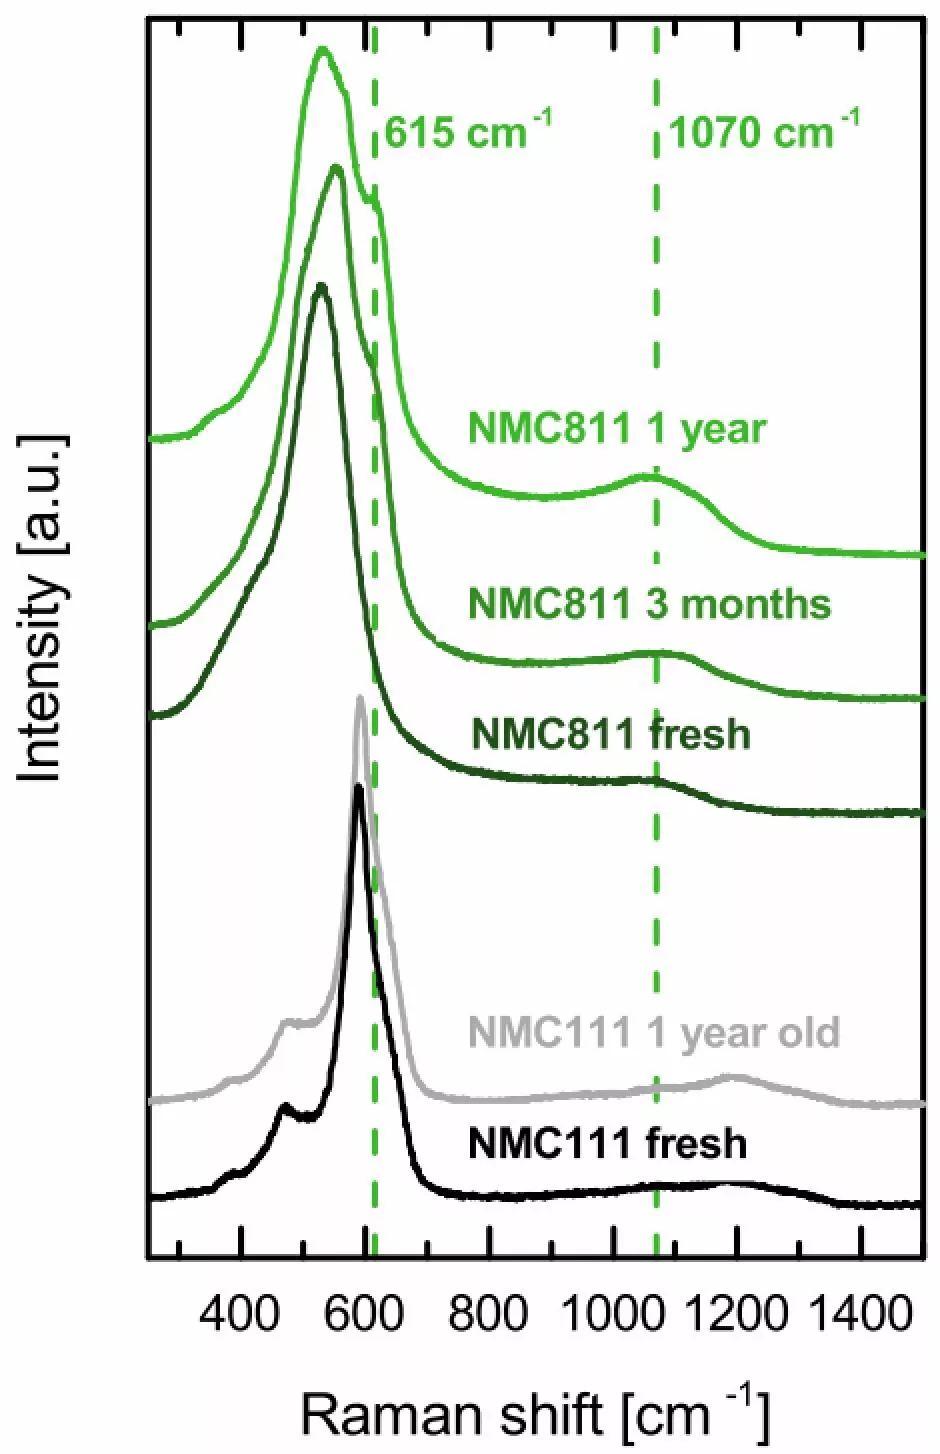 Hubert A. Gasteiger机理研究：为什么NCM811不能常温常湿保存？